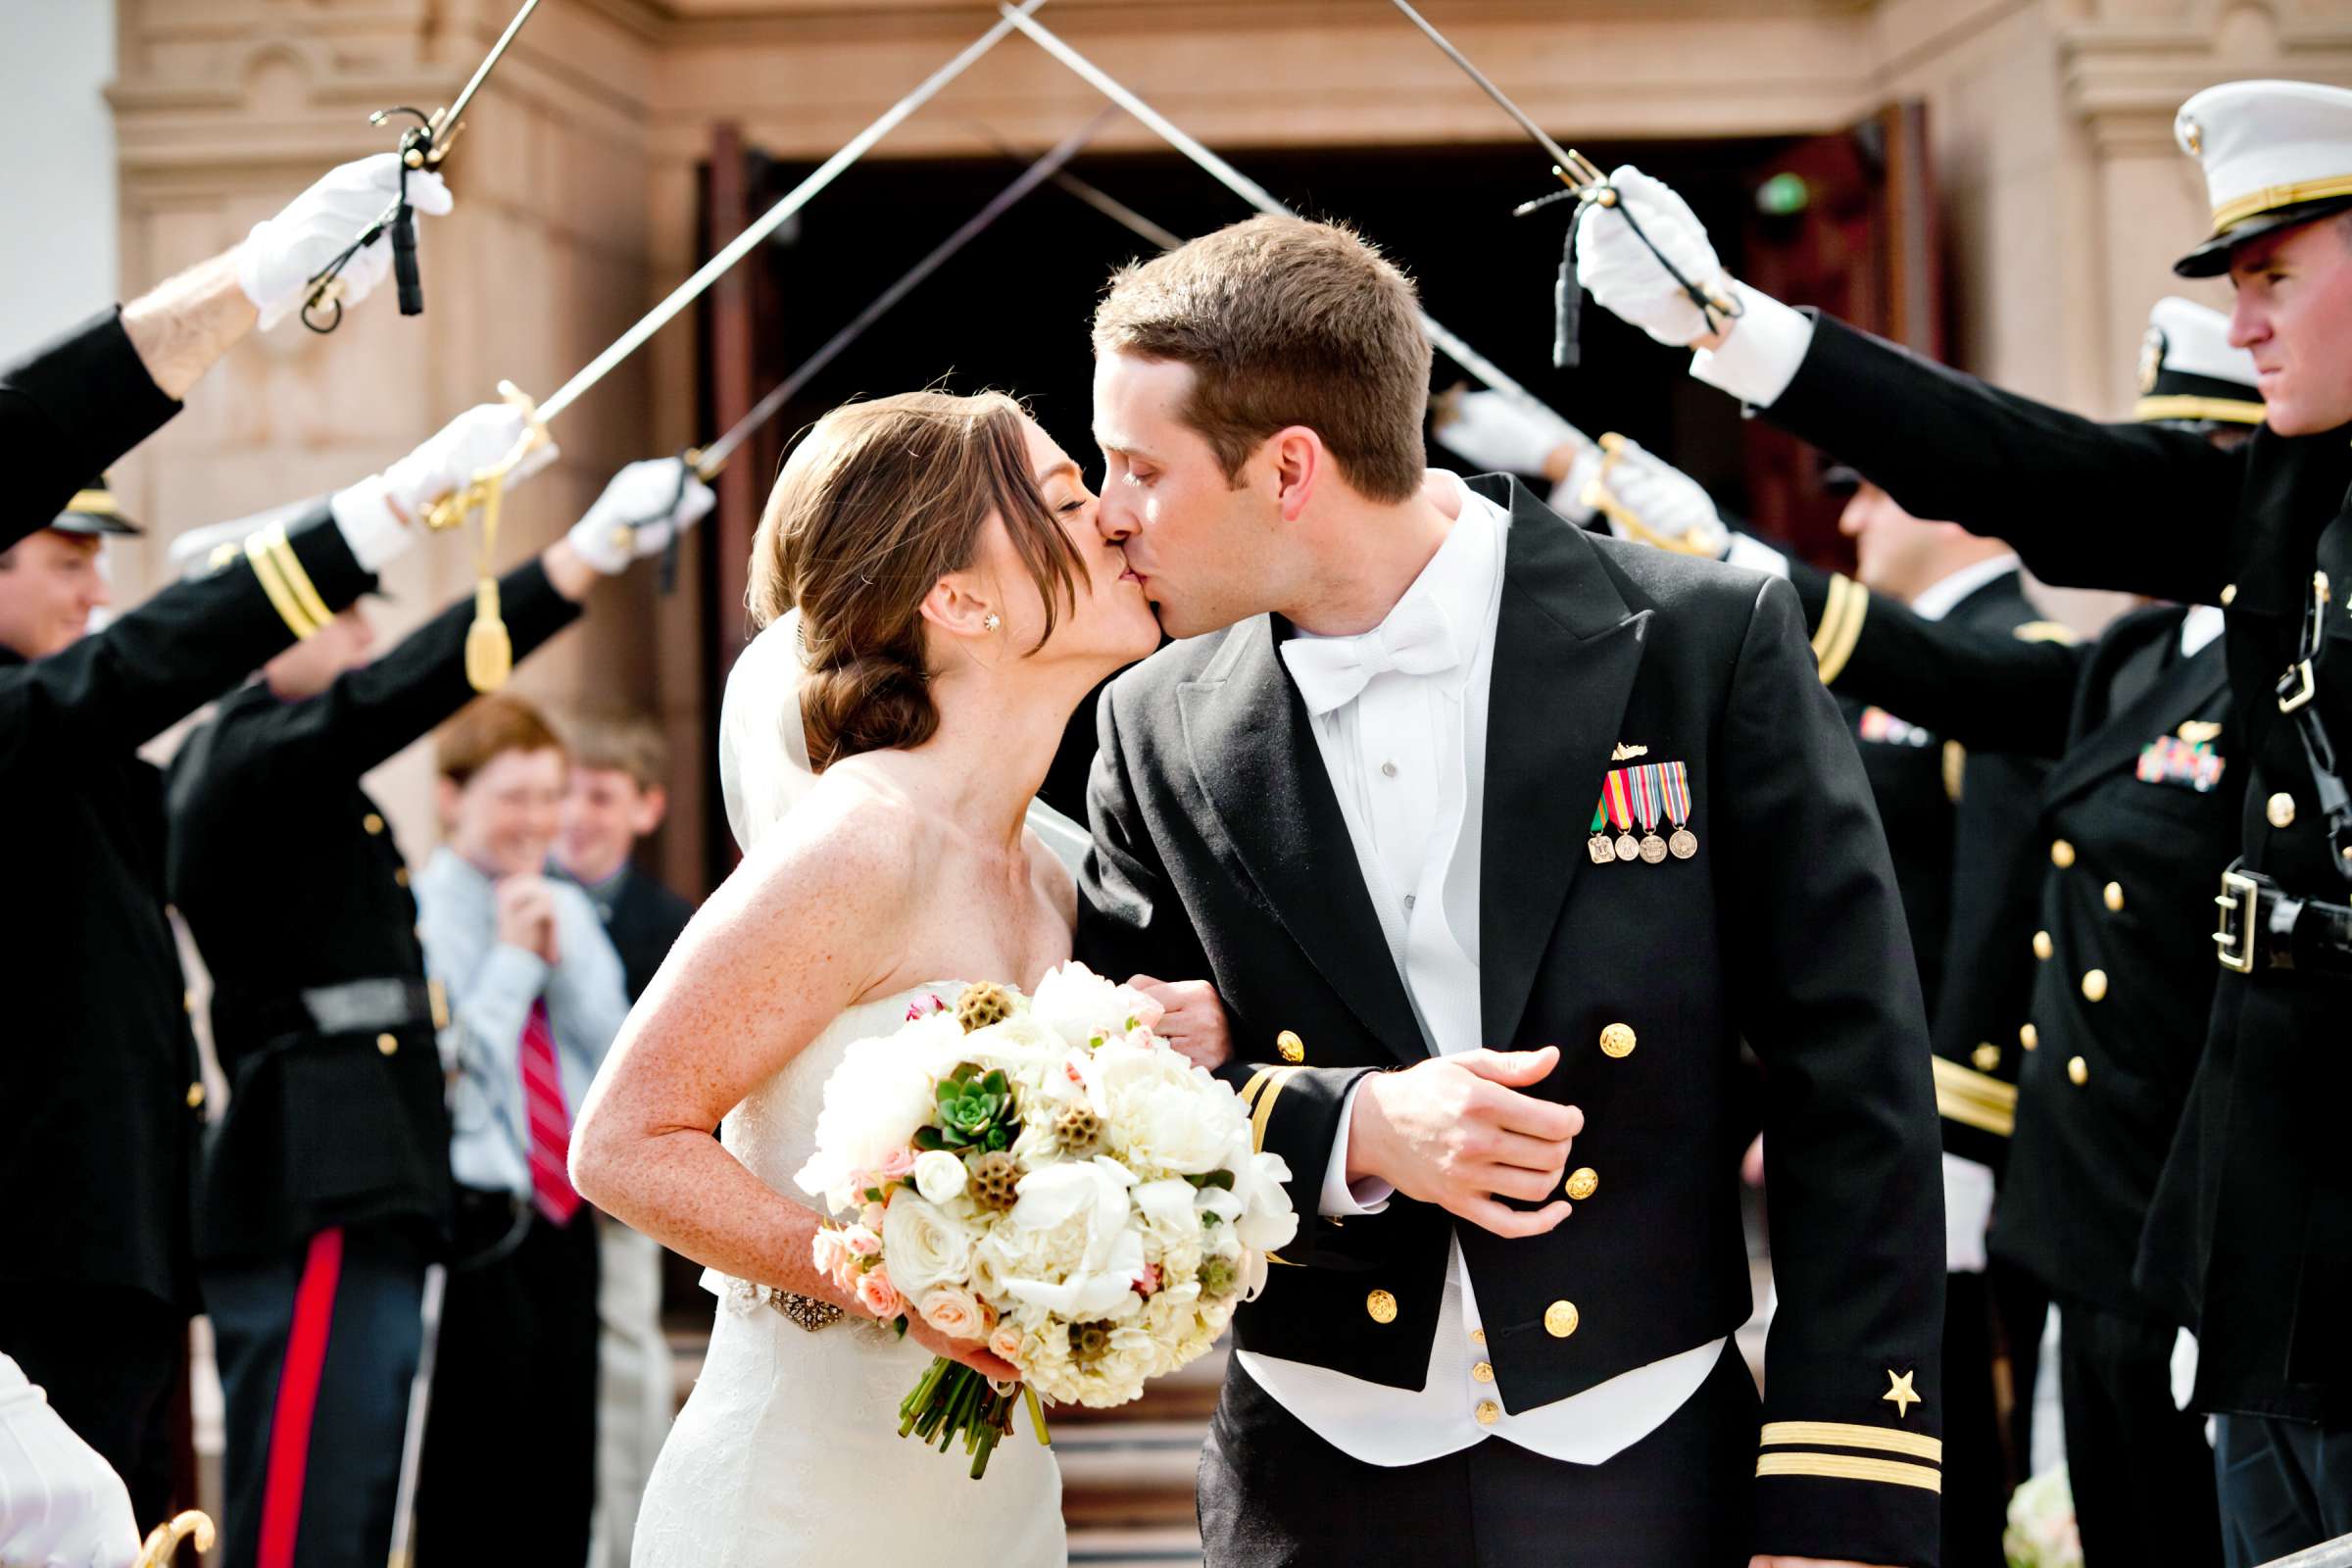 Admiral Kidd Club Wedding coordinated by I Do Weddings, Ashley and Rhett Wedding Photo #358481 by True Photography